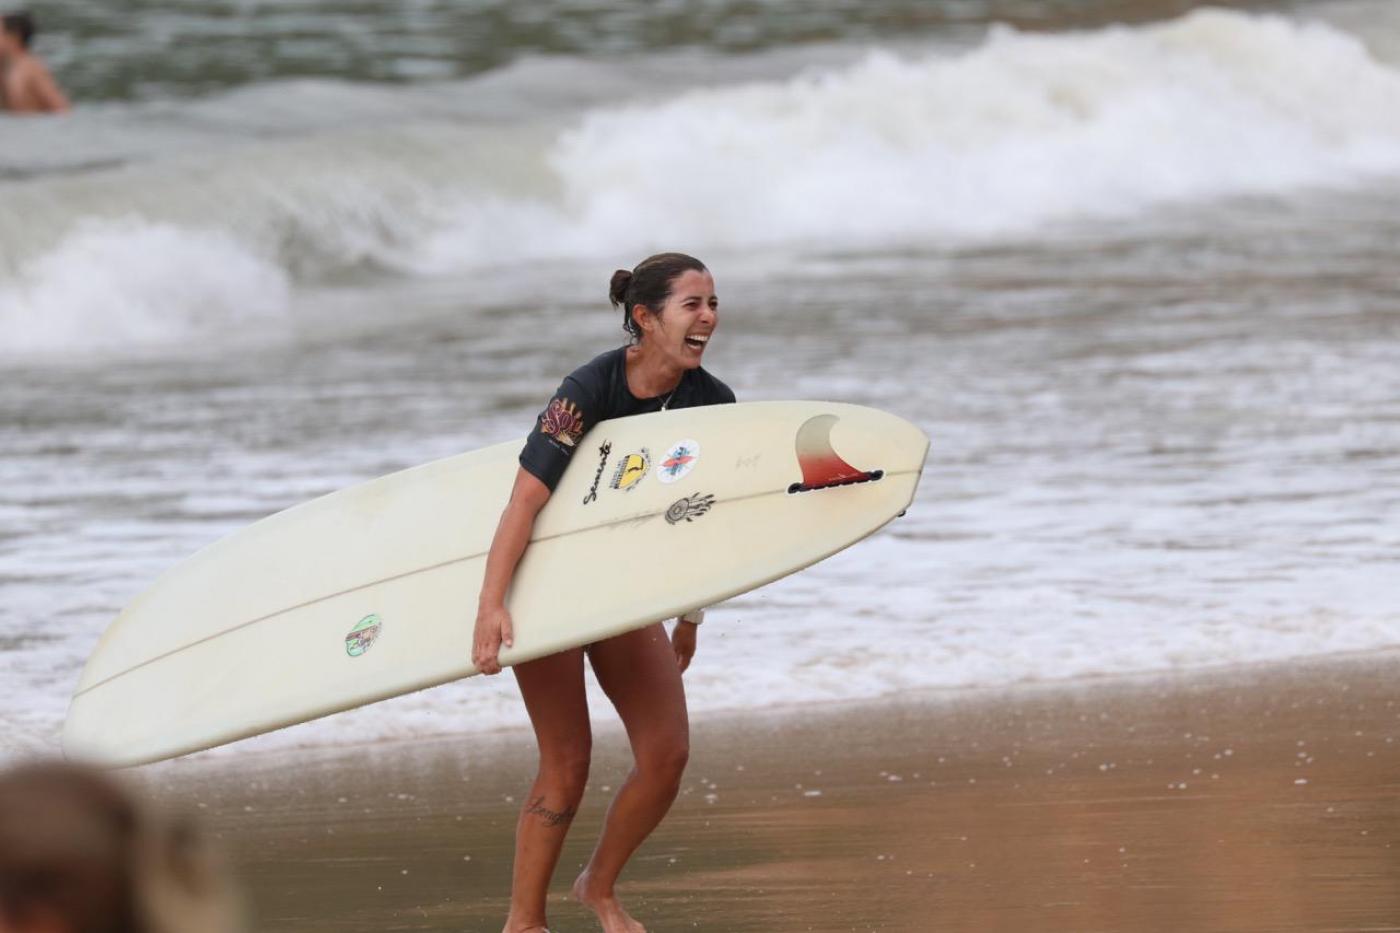 surfista com a prancha sai do mar sorrindo #paratodosverem